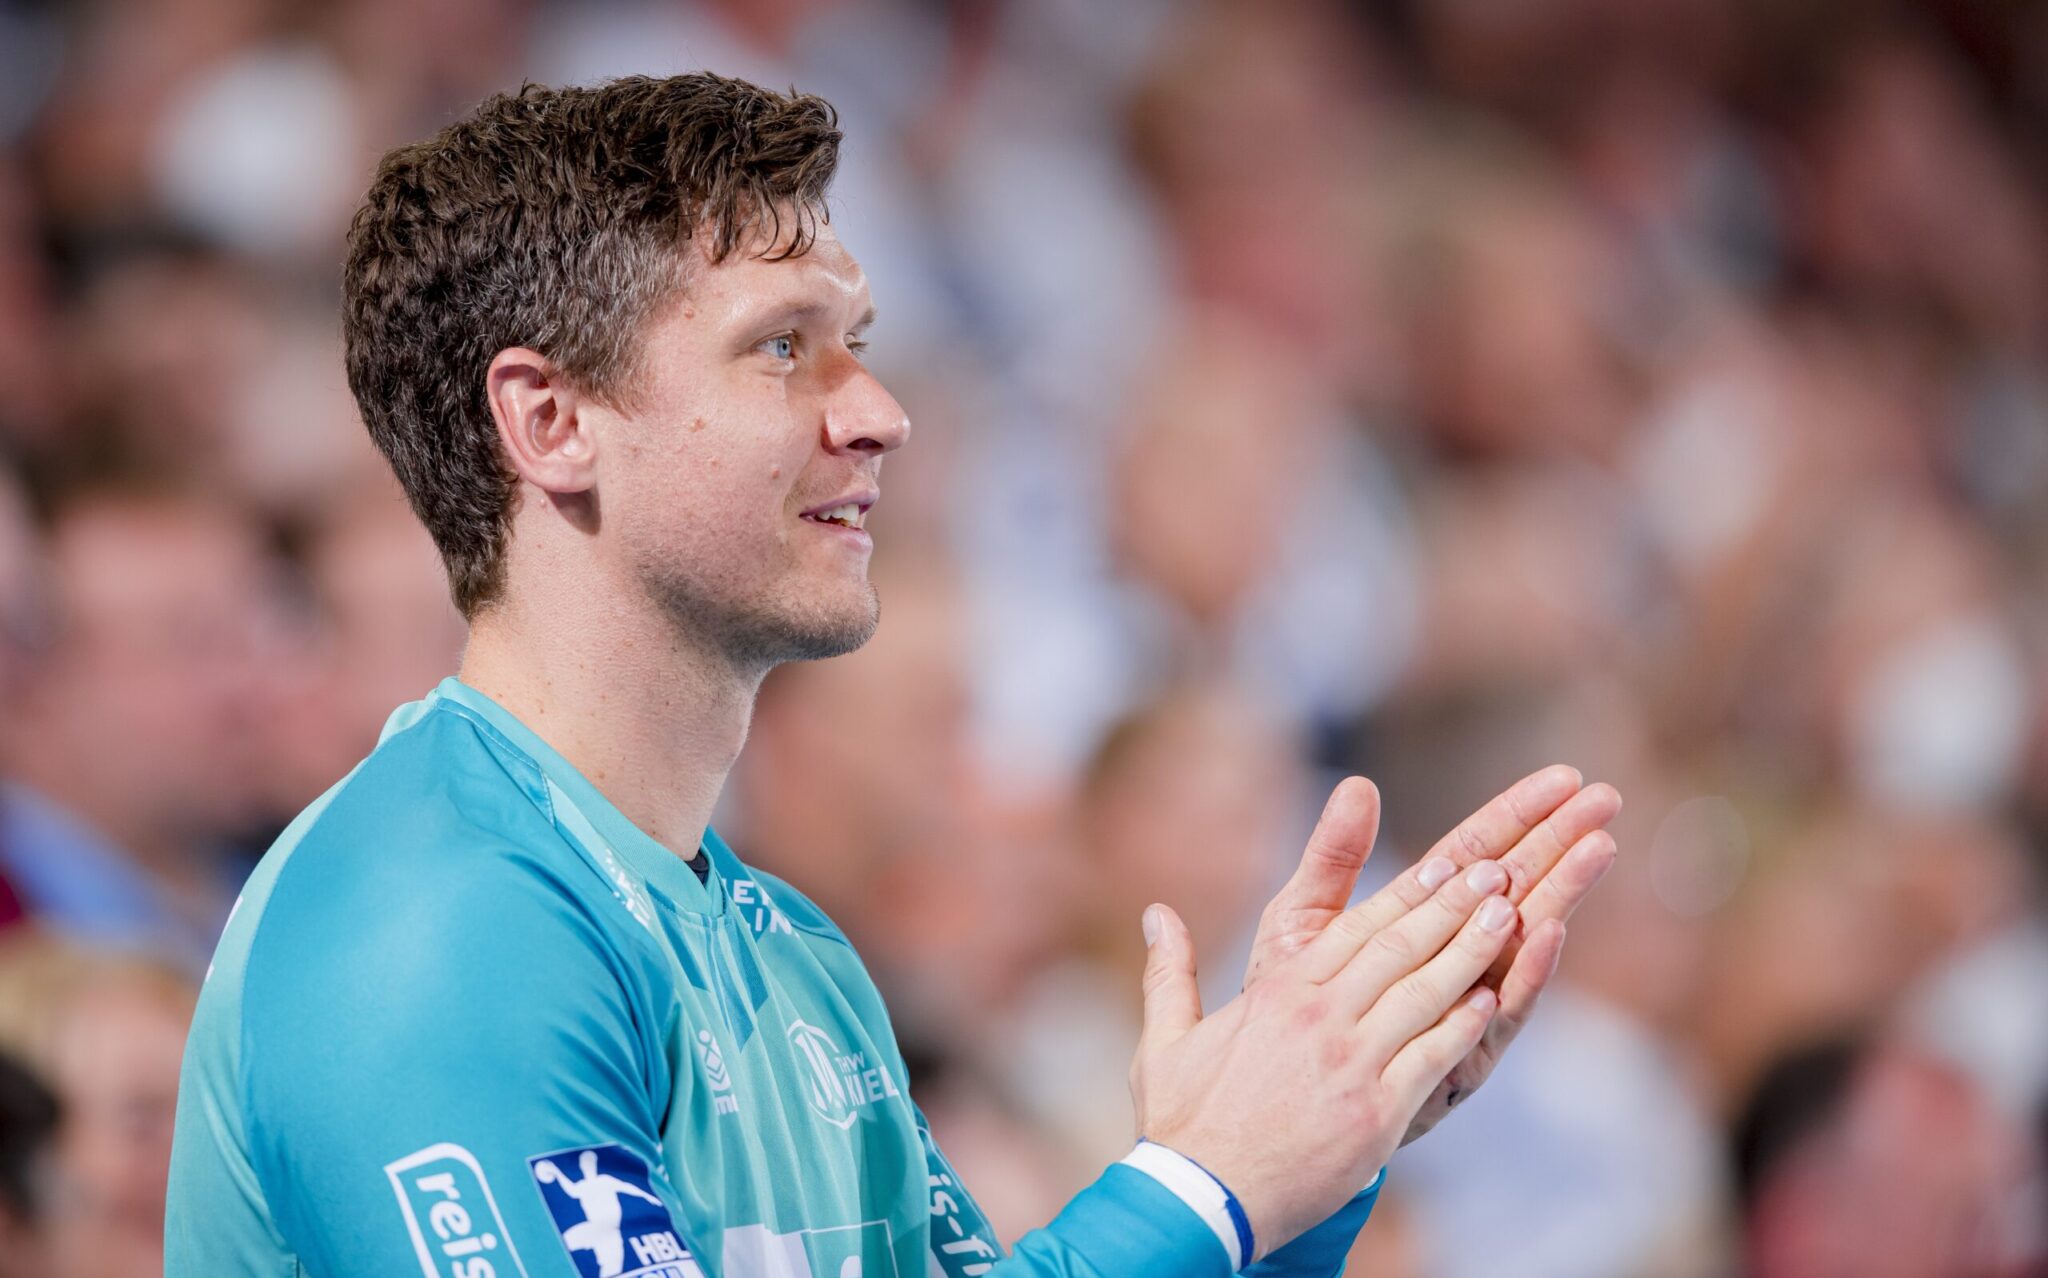 THW Kapitän Niklas Landin am Sonntag zu Gast beim NDR Sportclub THW Handball